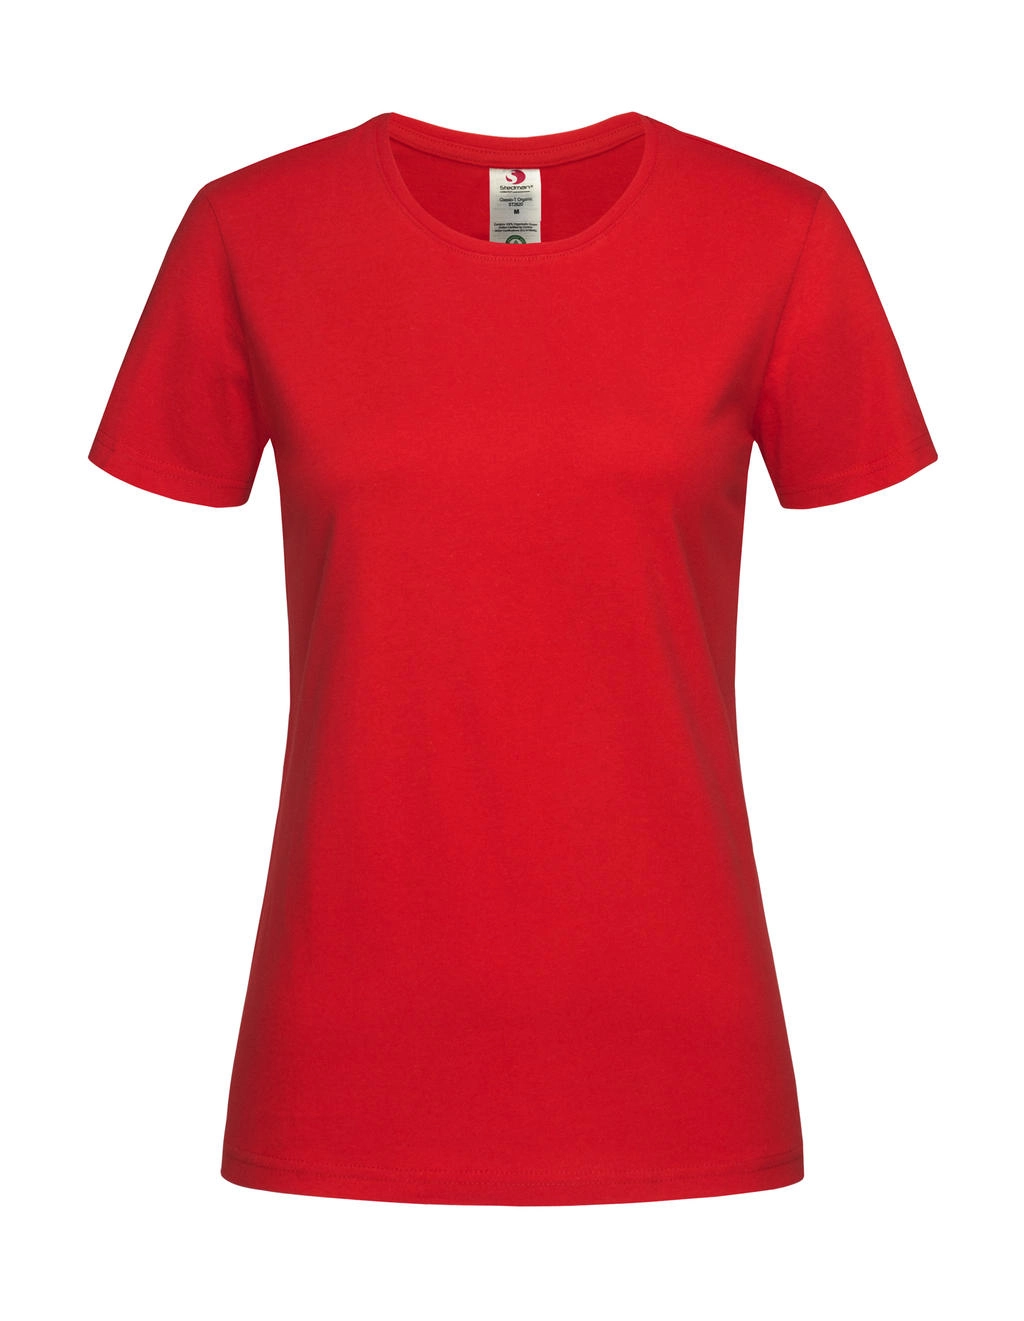 Classic-T Organic Fitted Women zum Besticken und Bedrucken in der Farbe Scarlet Red mit Ihren Logo, Schriftzug oder Motiv.